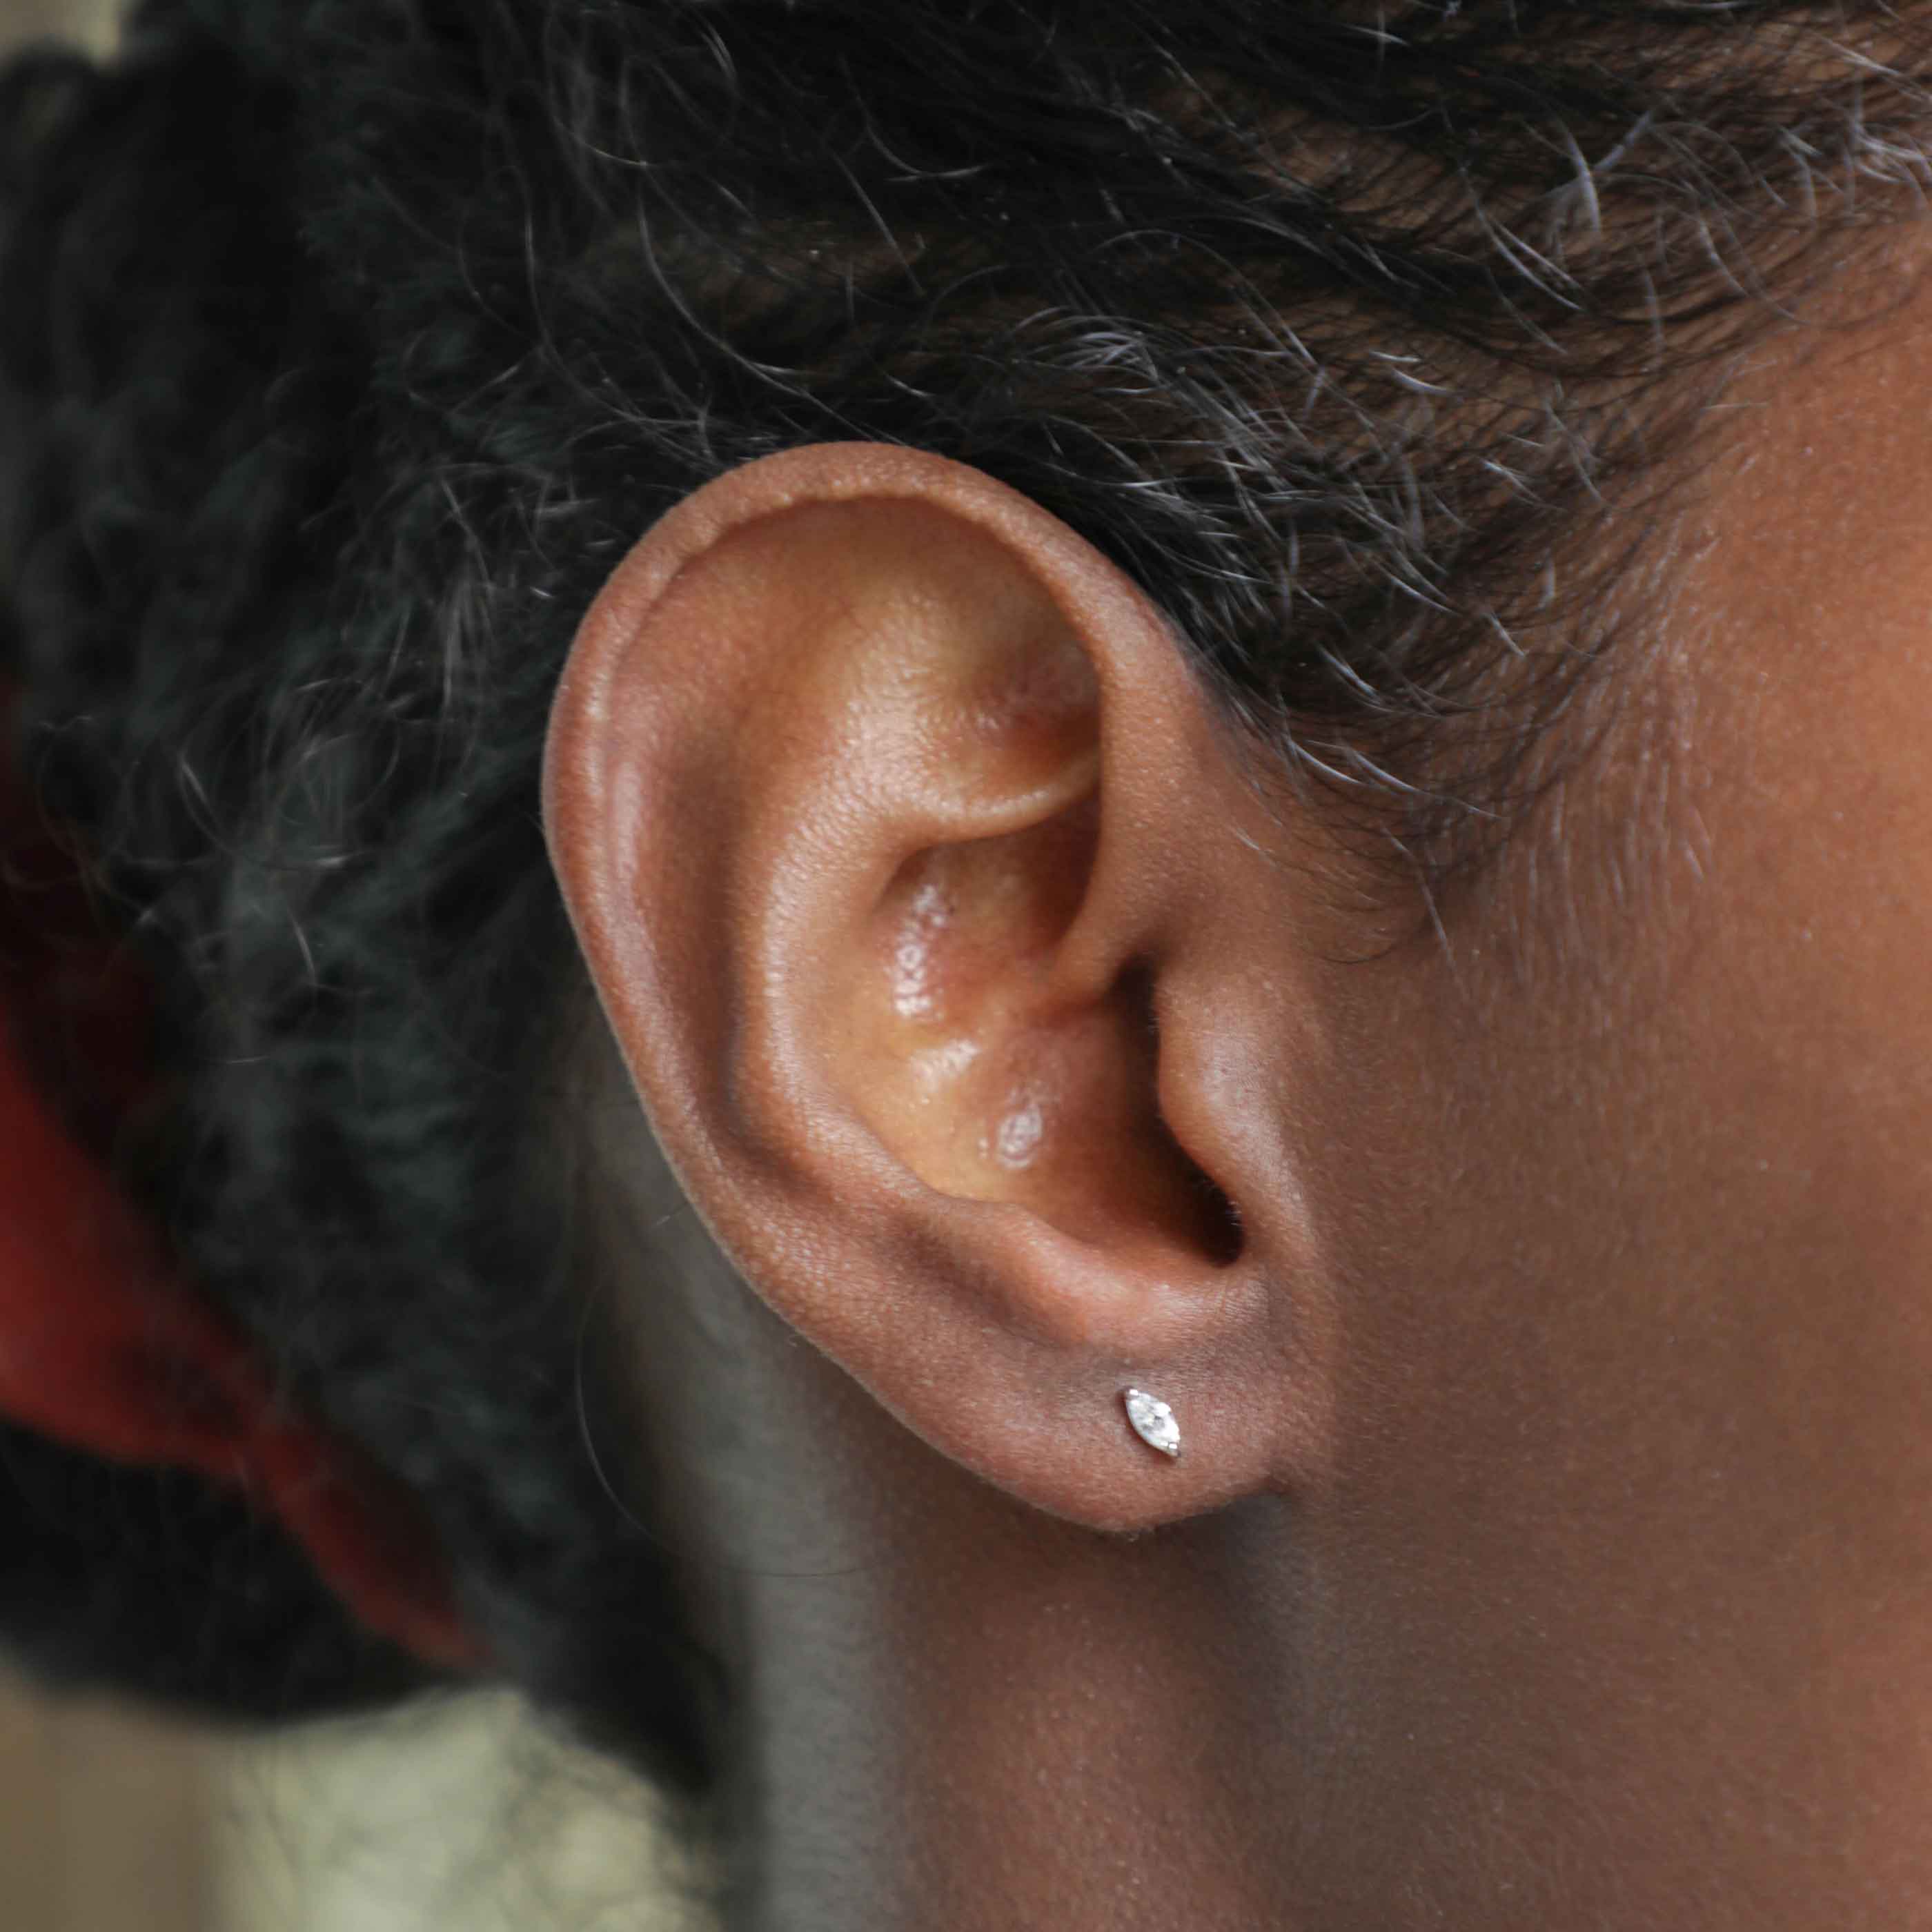 Navette Stud Earrings in Silver worn in first lobe piercing